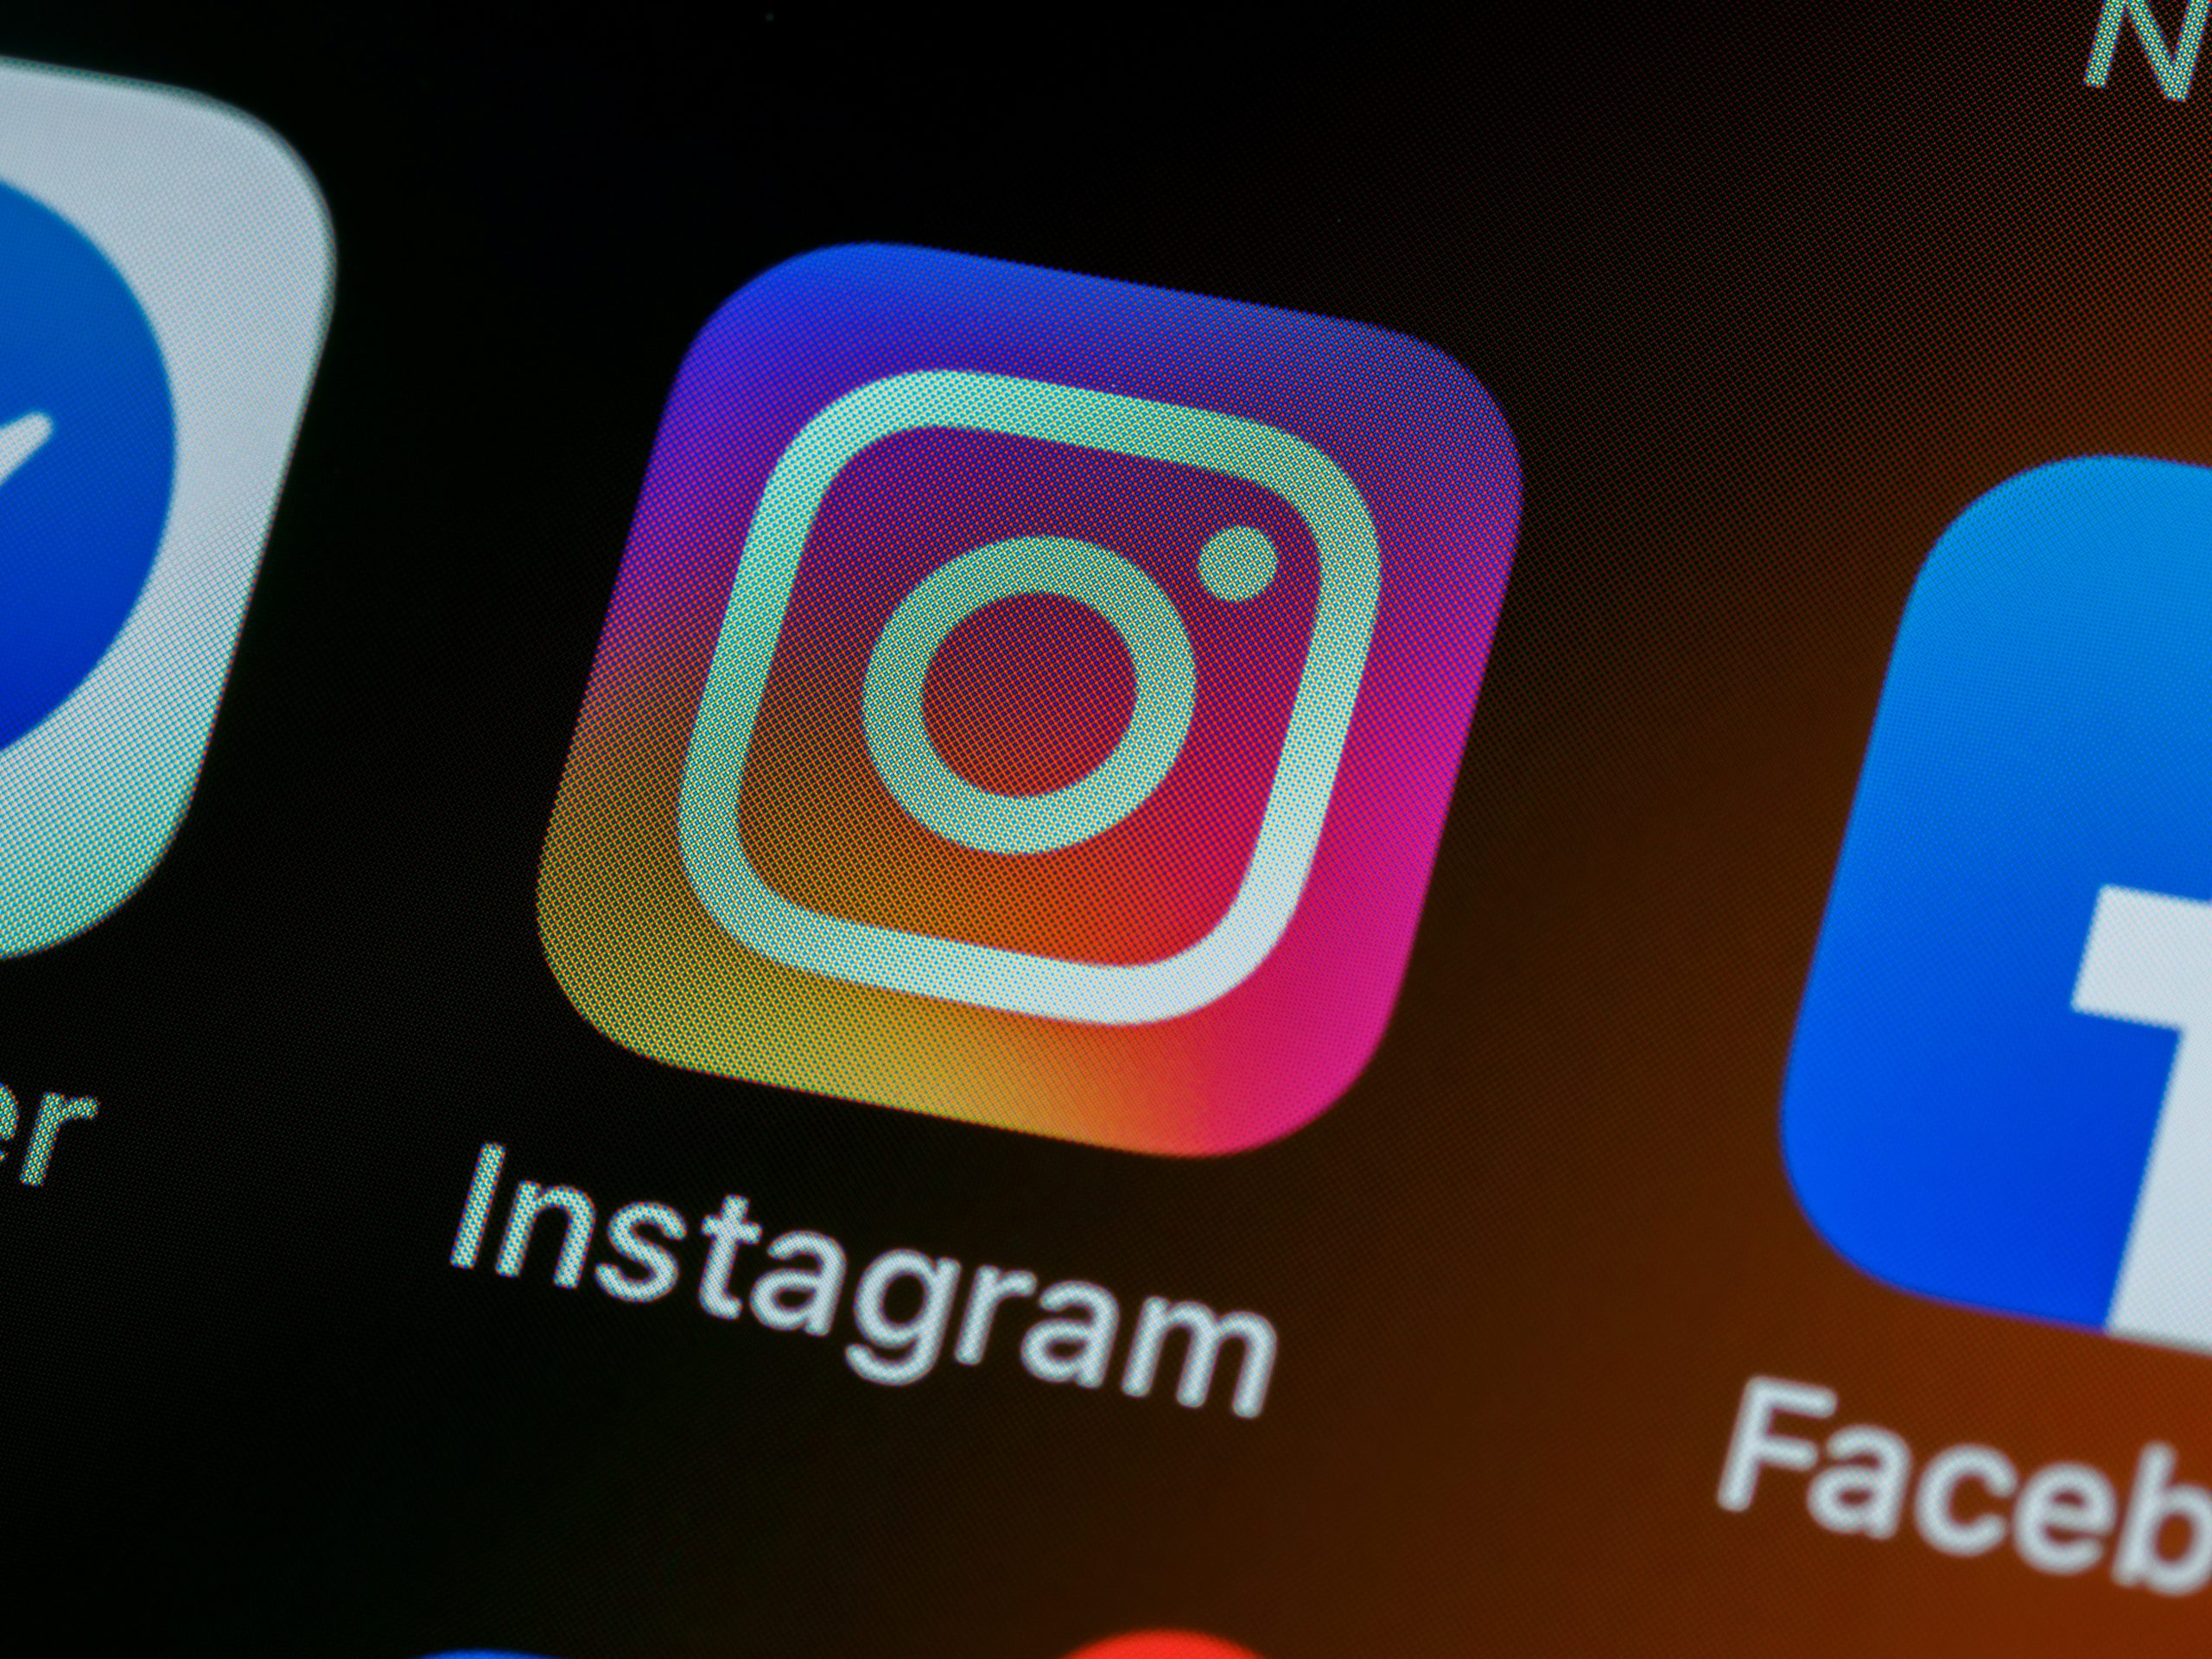 Instagram: conserte seu feed e dê adeus aos posts sugeridos de uma vez por todas! (Imagem: Brett Jordan/ Unsplash)